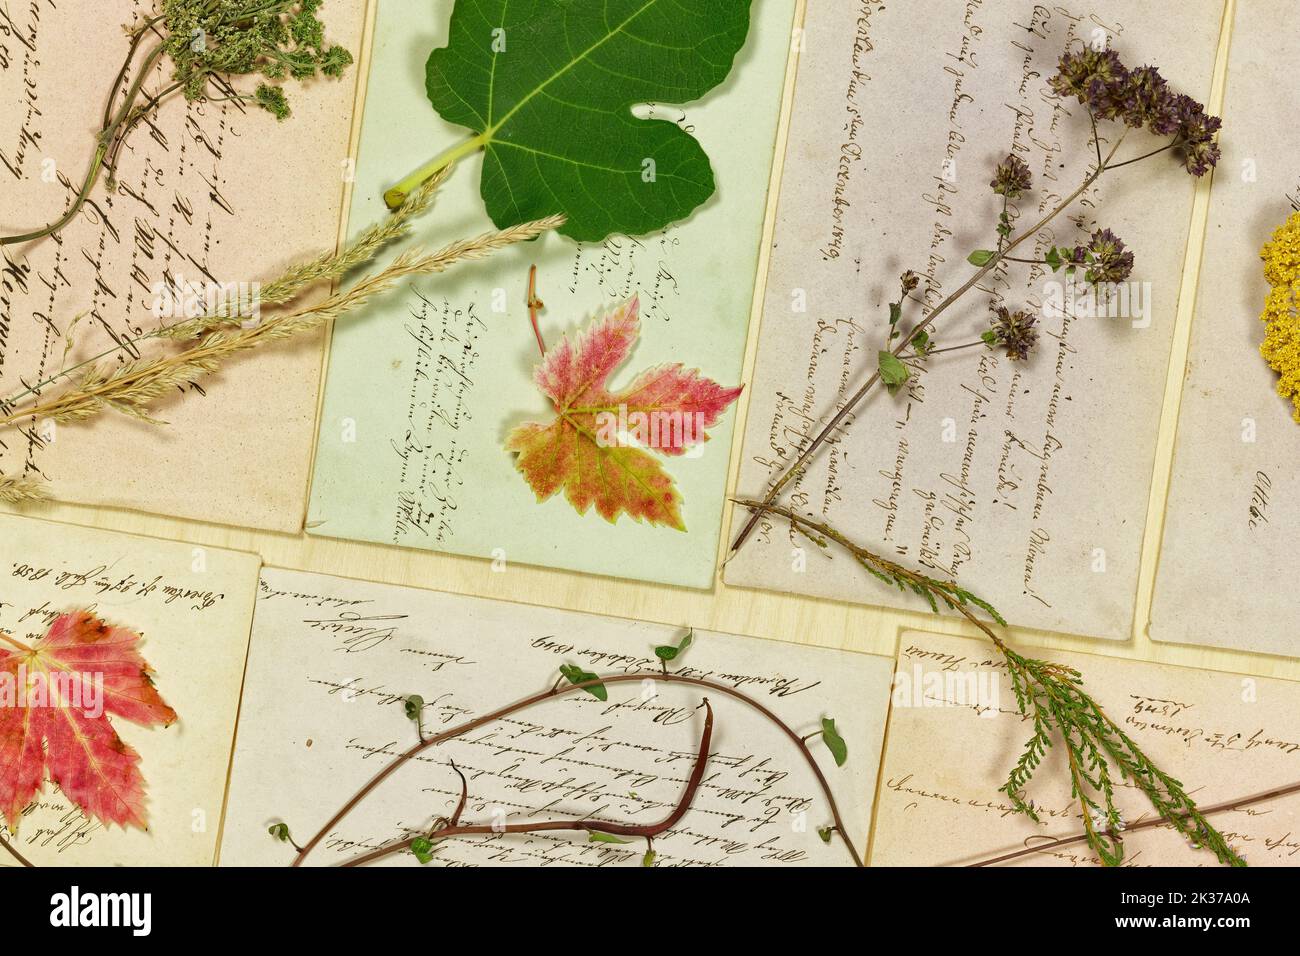 Natura morta vegetale con foglie ed Erbe di fronte alle lettere del 19th° secolo Foto Stock